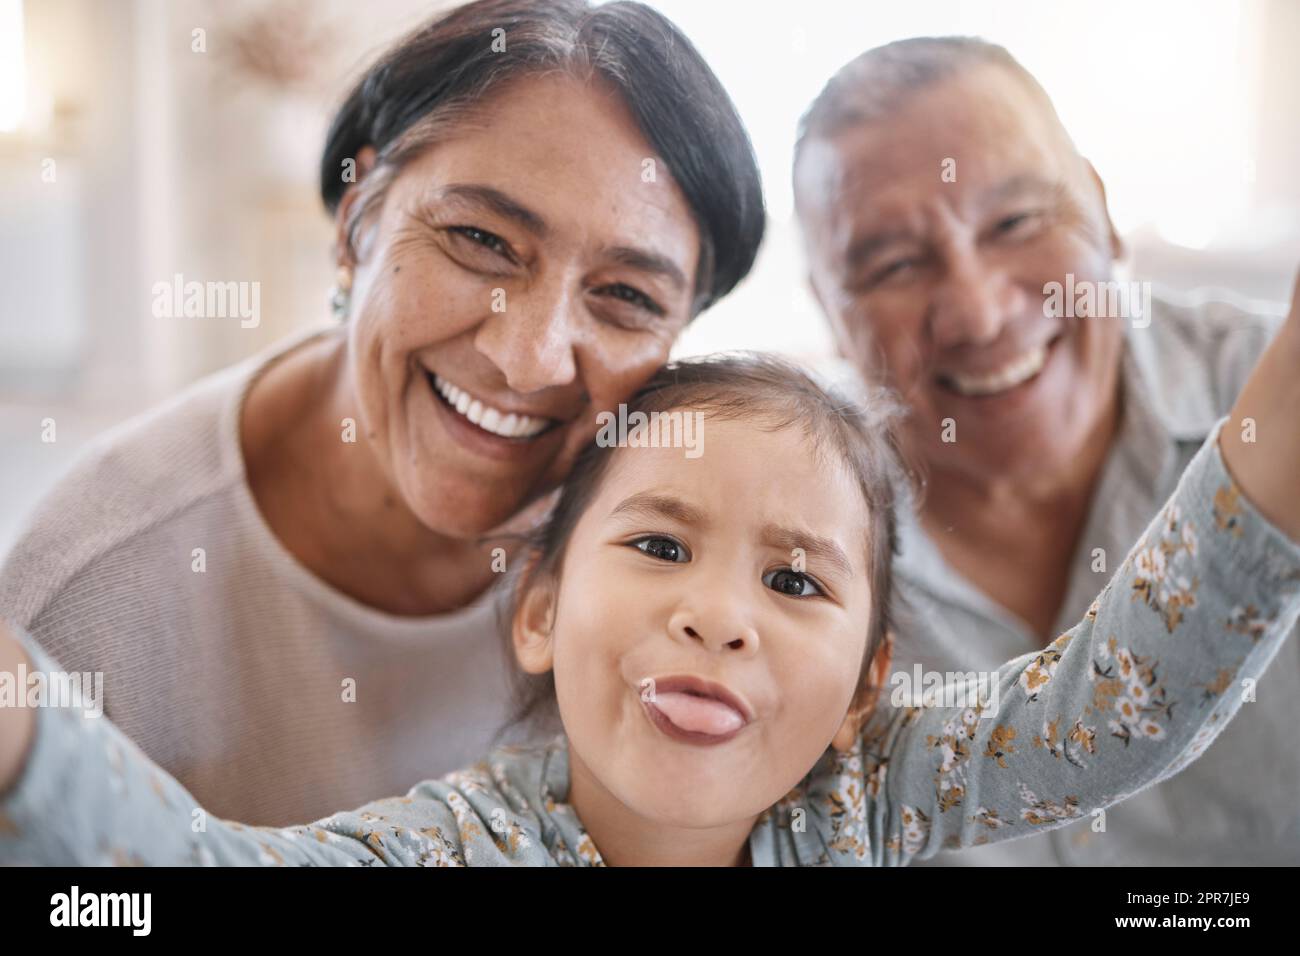 Porträt von lächelnden Großeltern und Enkelkindern gemischter Rassen, die zu Hause in der Lounge ein Selfie machen. Lateinamerikanischer Seniorenmann und -Frau, die Fotos macht und sich mit ihrer süßen kleinen Enkelin zu Hause anfreundet Stockfoto